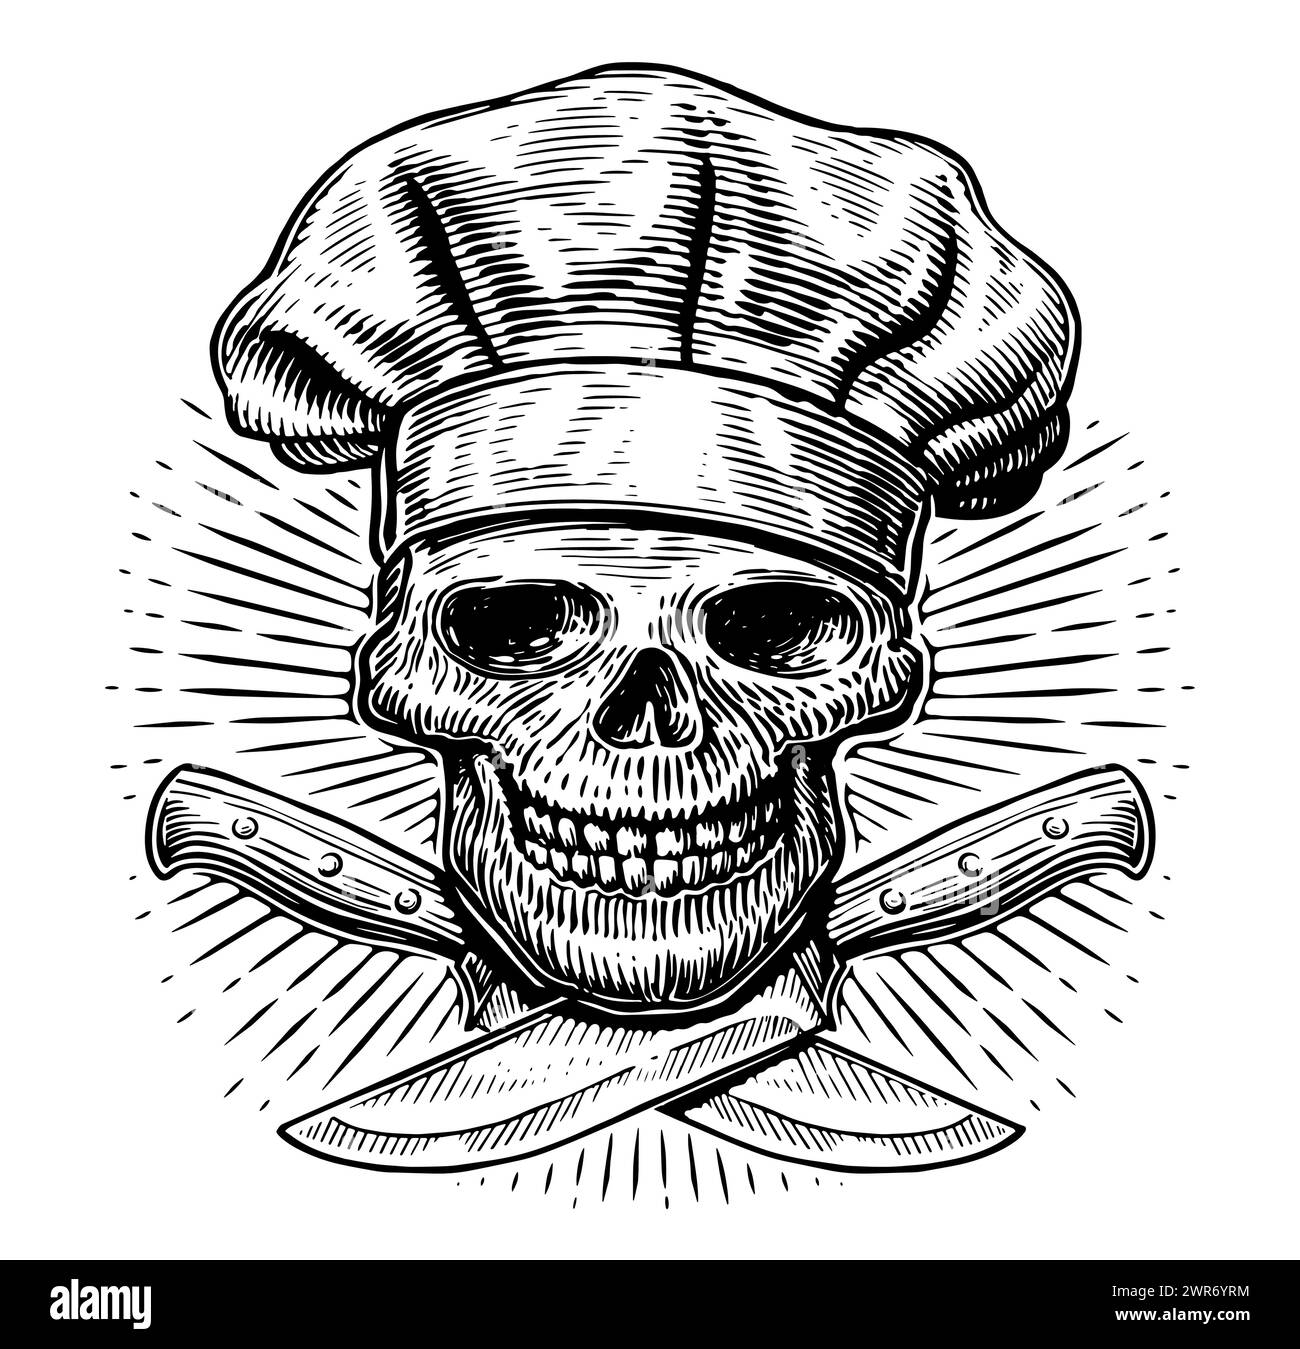 Teschio dello chef e coltelli incrociati. Cucina, concetto di preparazione del cibo. Illustrazione vettoriale vintage disegnata a mano Illustrazione Vettoriale